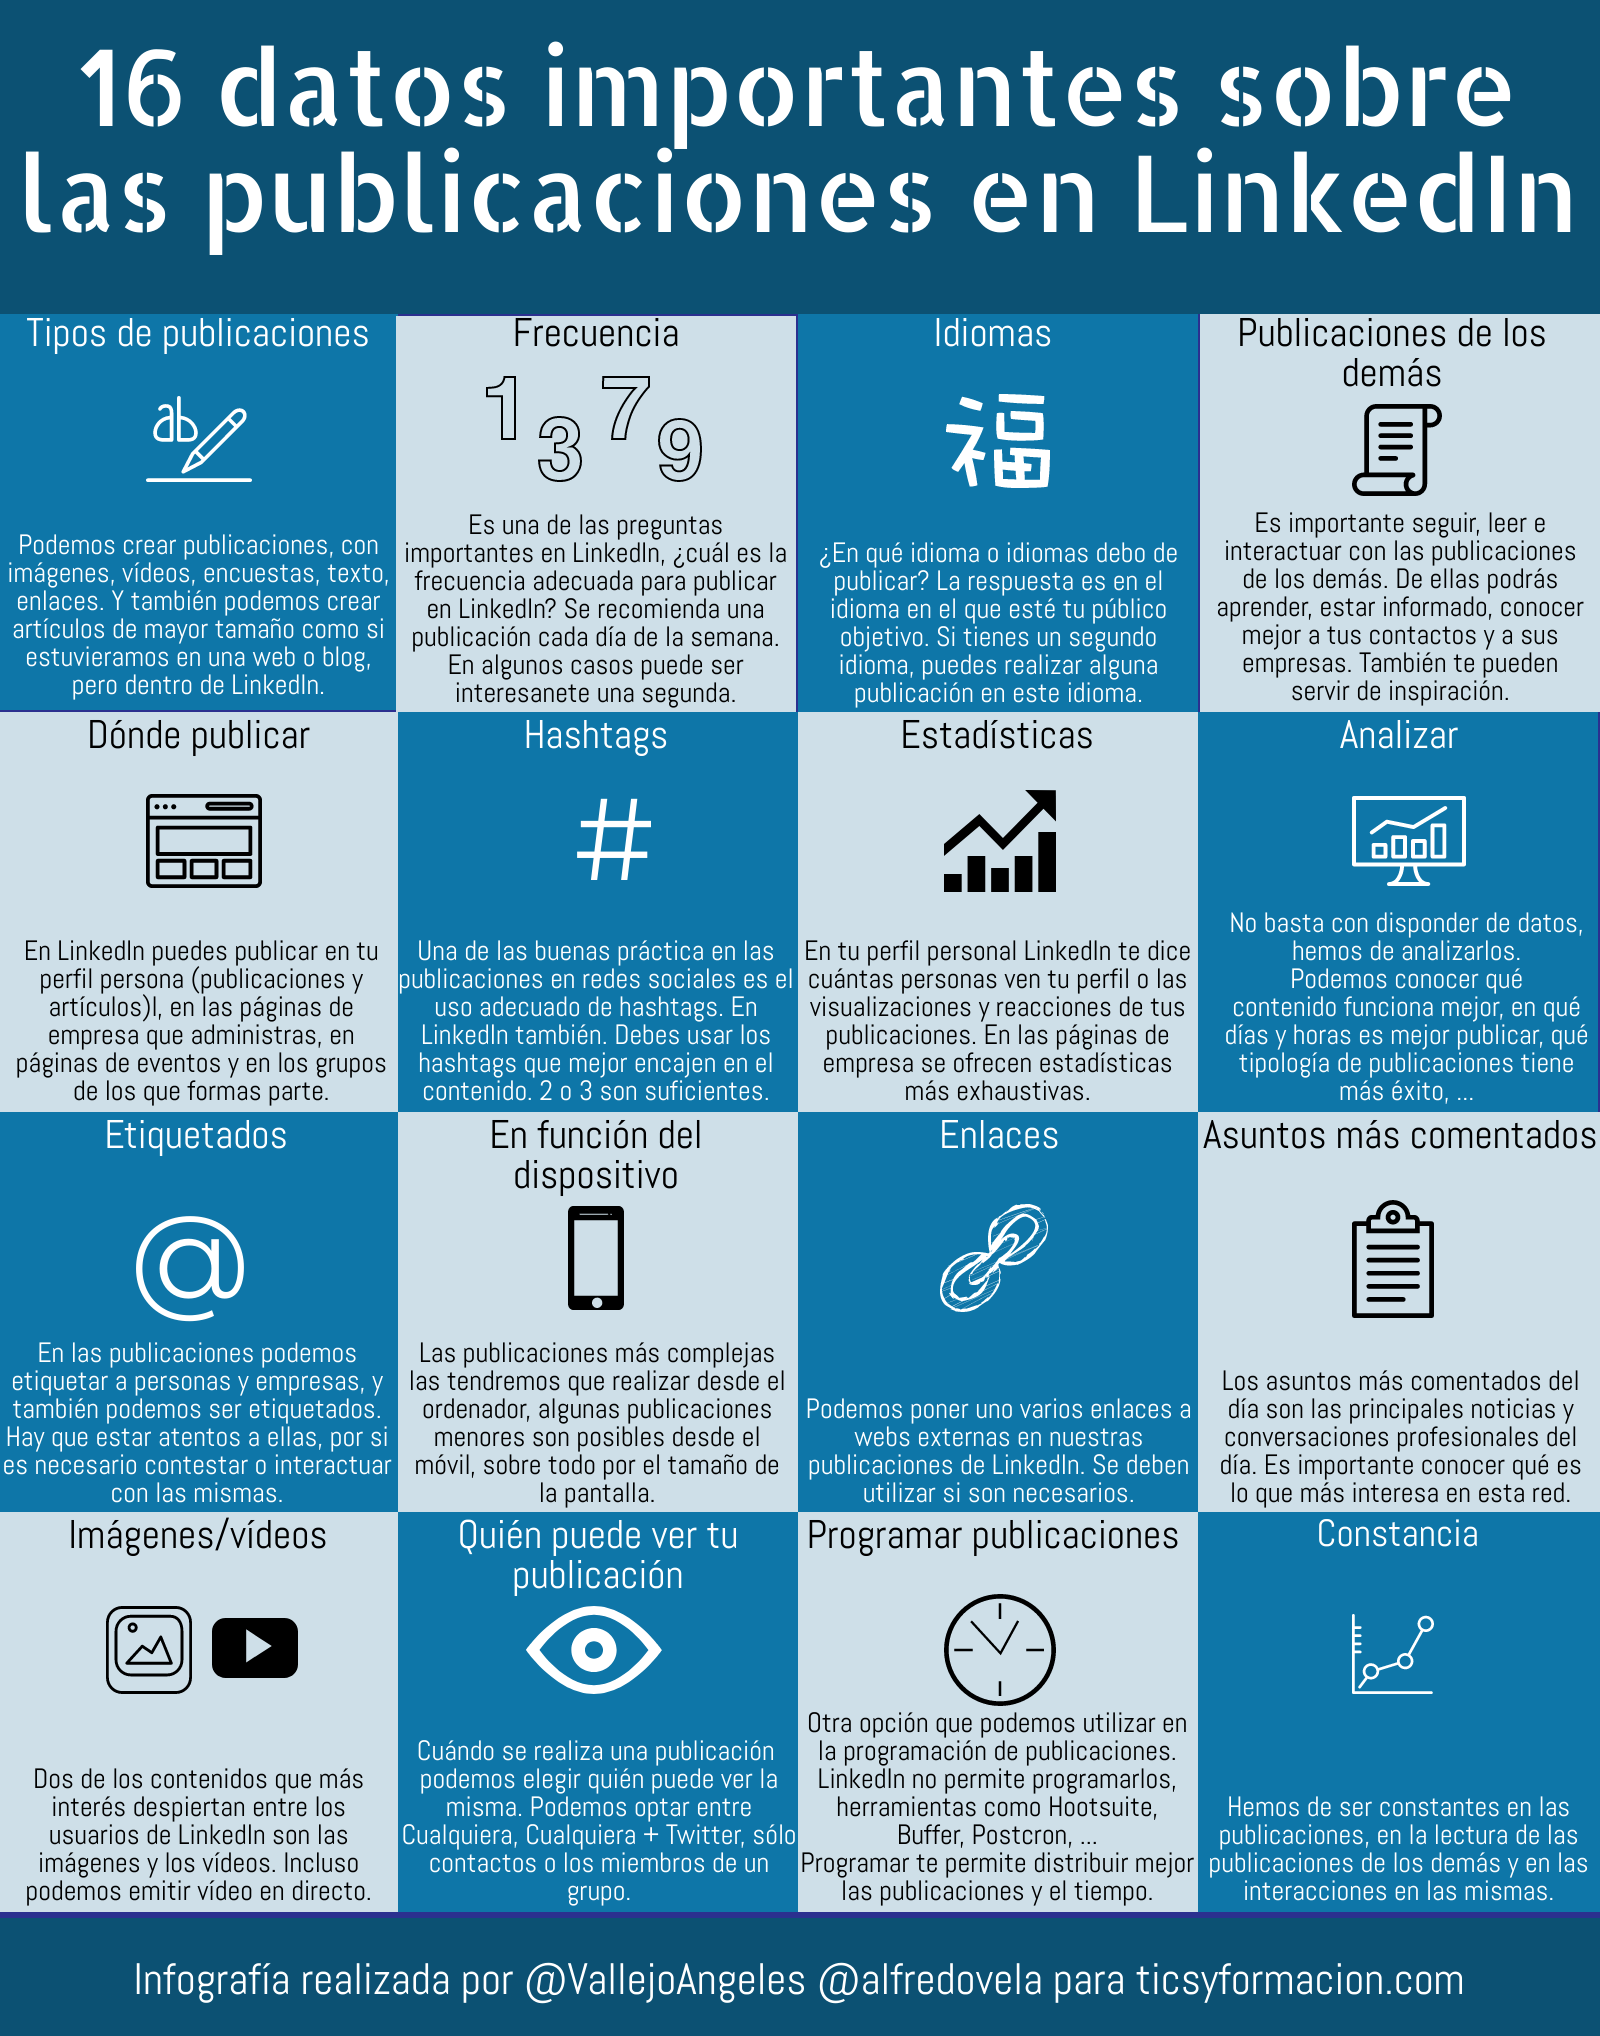 16 datos importantes sobre las publicaciones en LinkedIn #infografia #socialmedia #contenidos #LinkedIn